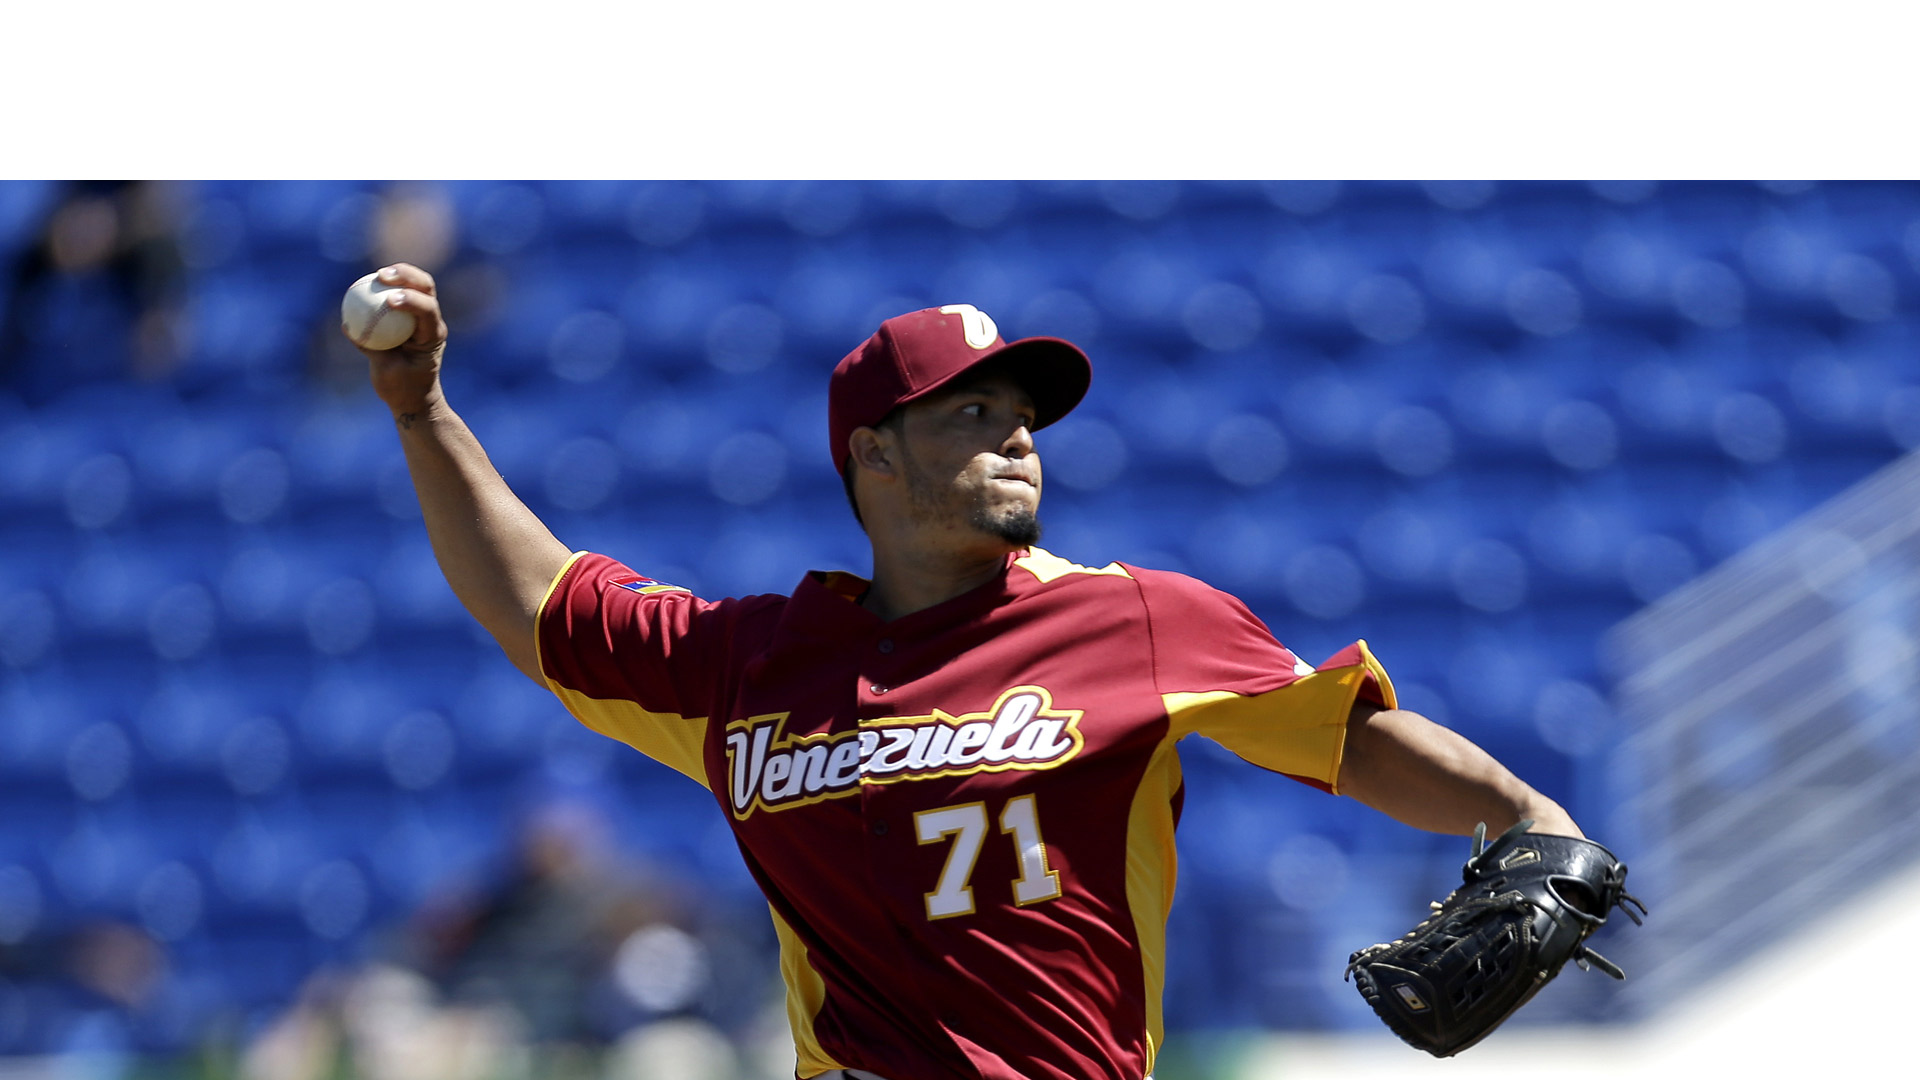 La selección venezolana de béisbol derroto a los estadounidenses imponiéndose con siete carreras en el Mundial de Béisbol Premier 12